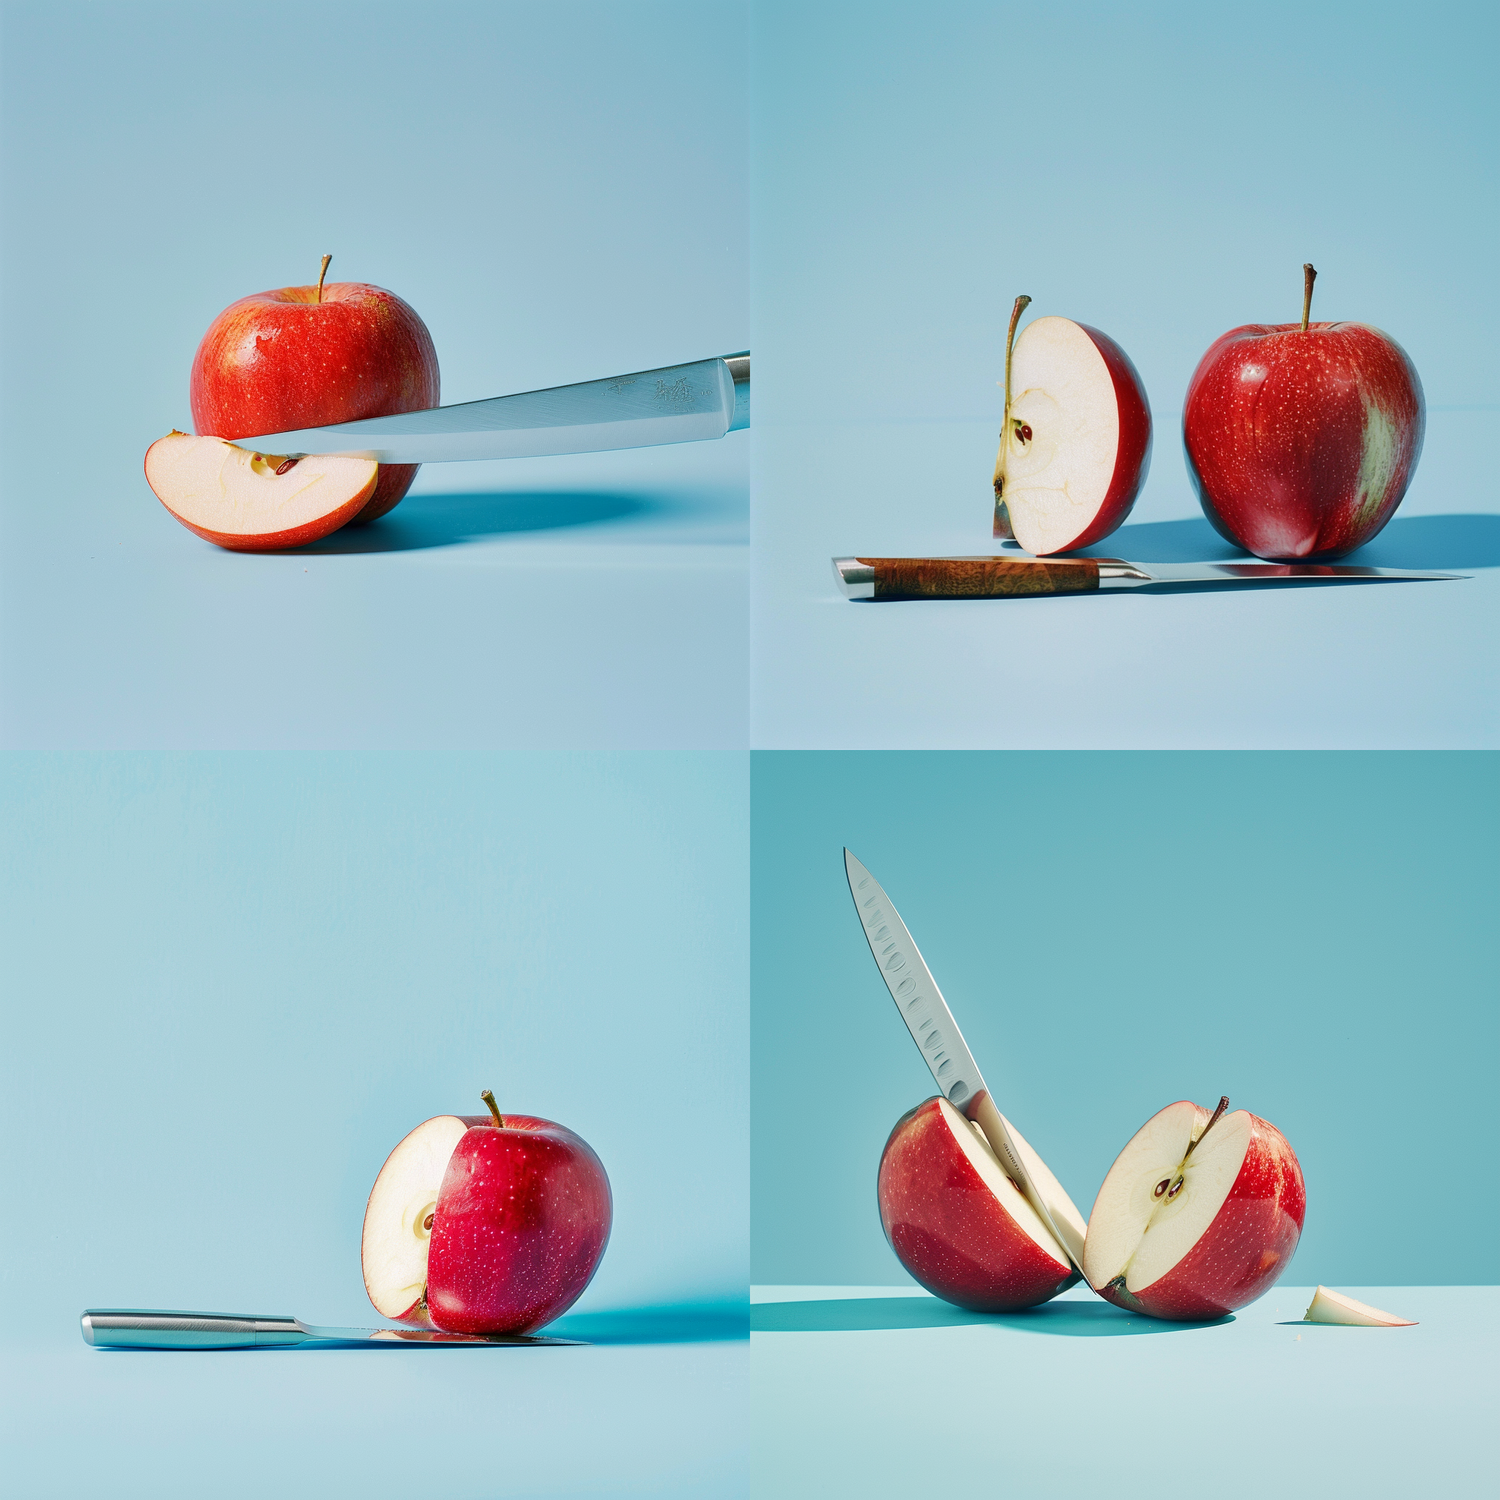 Der Apfel ist die Kernzutat in der Apfelessig Diät.